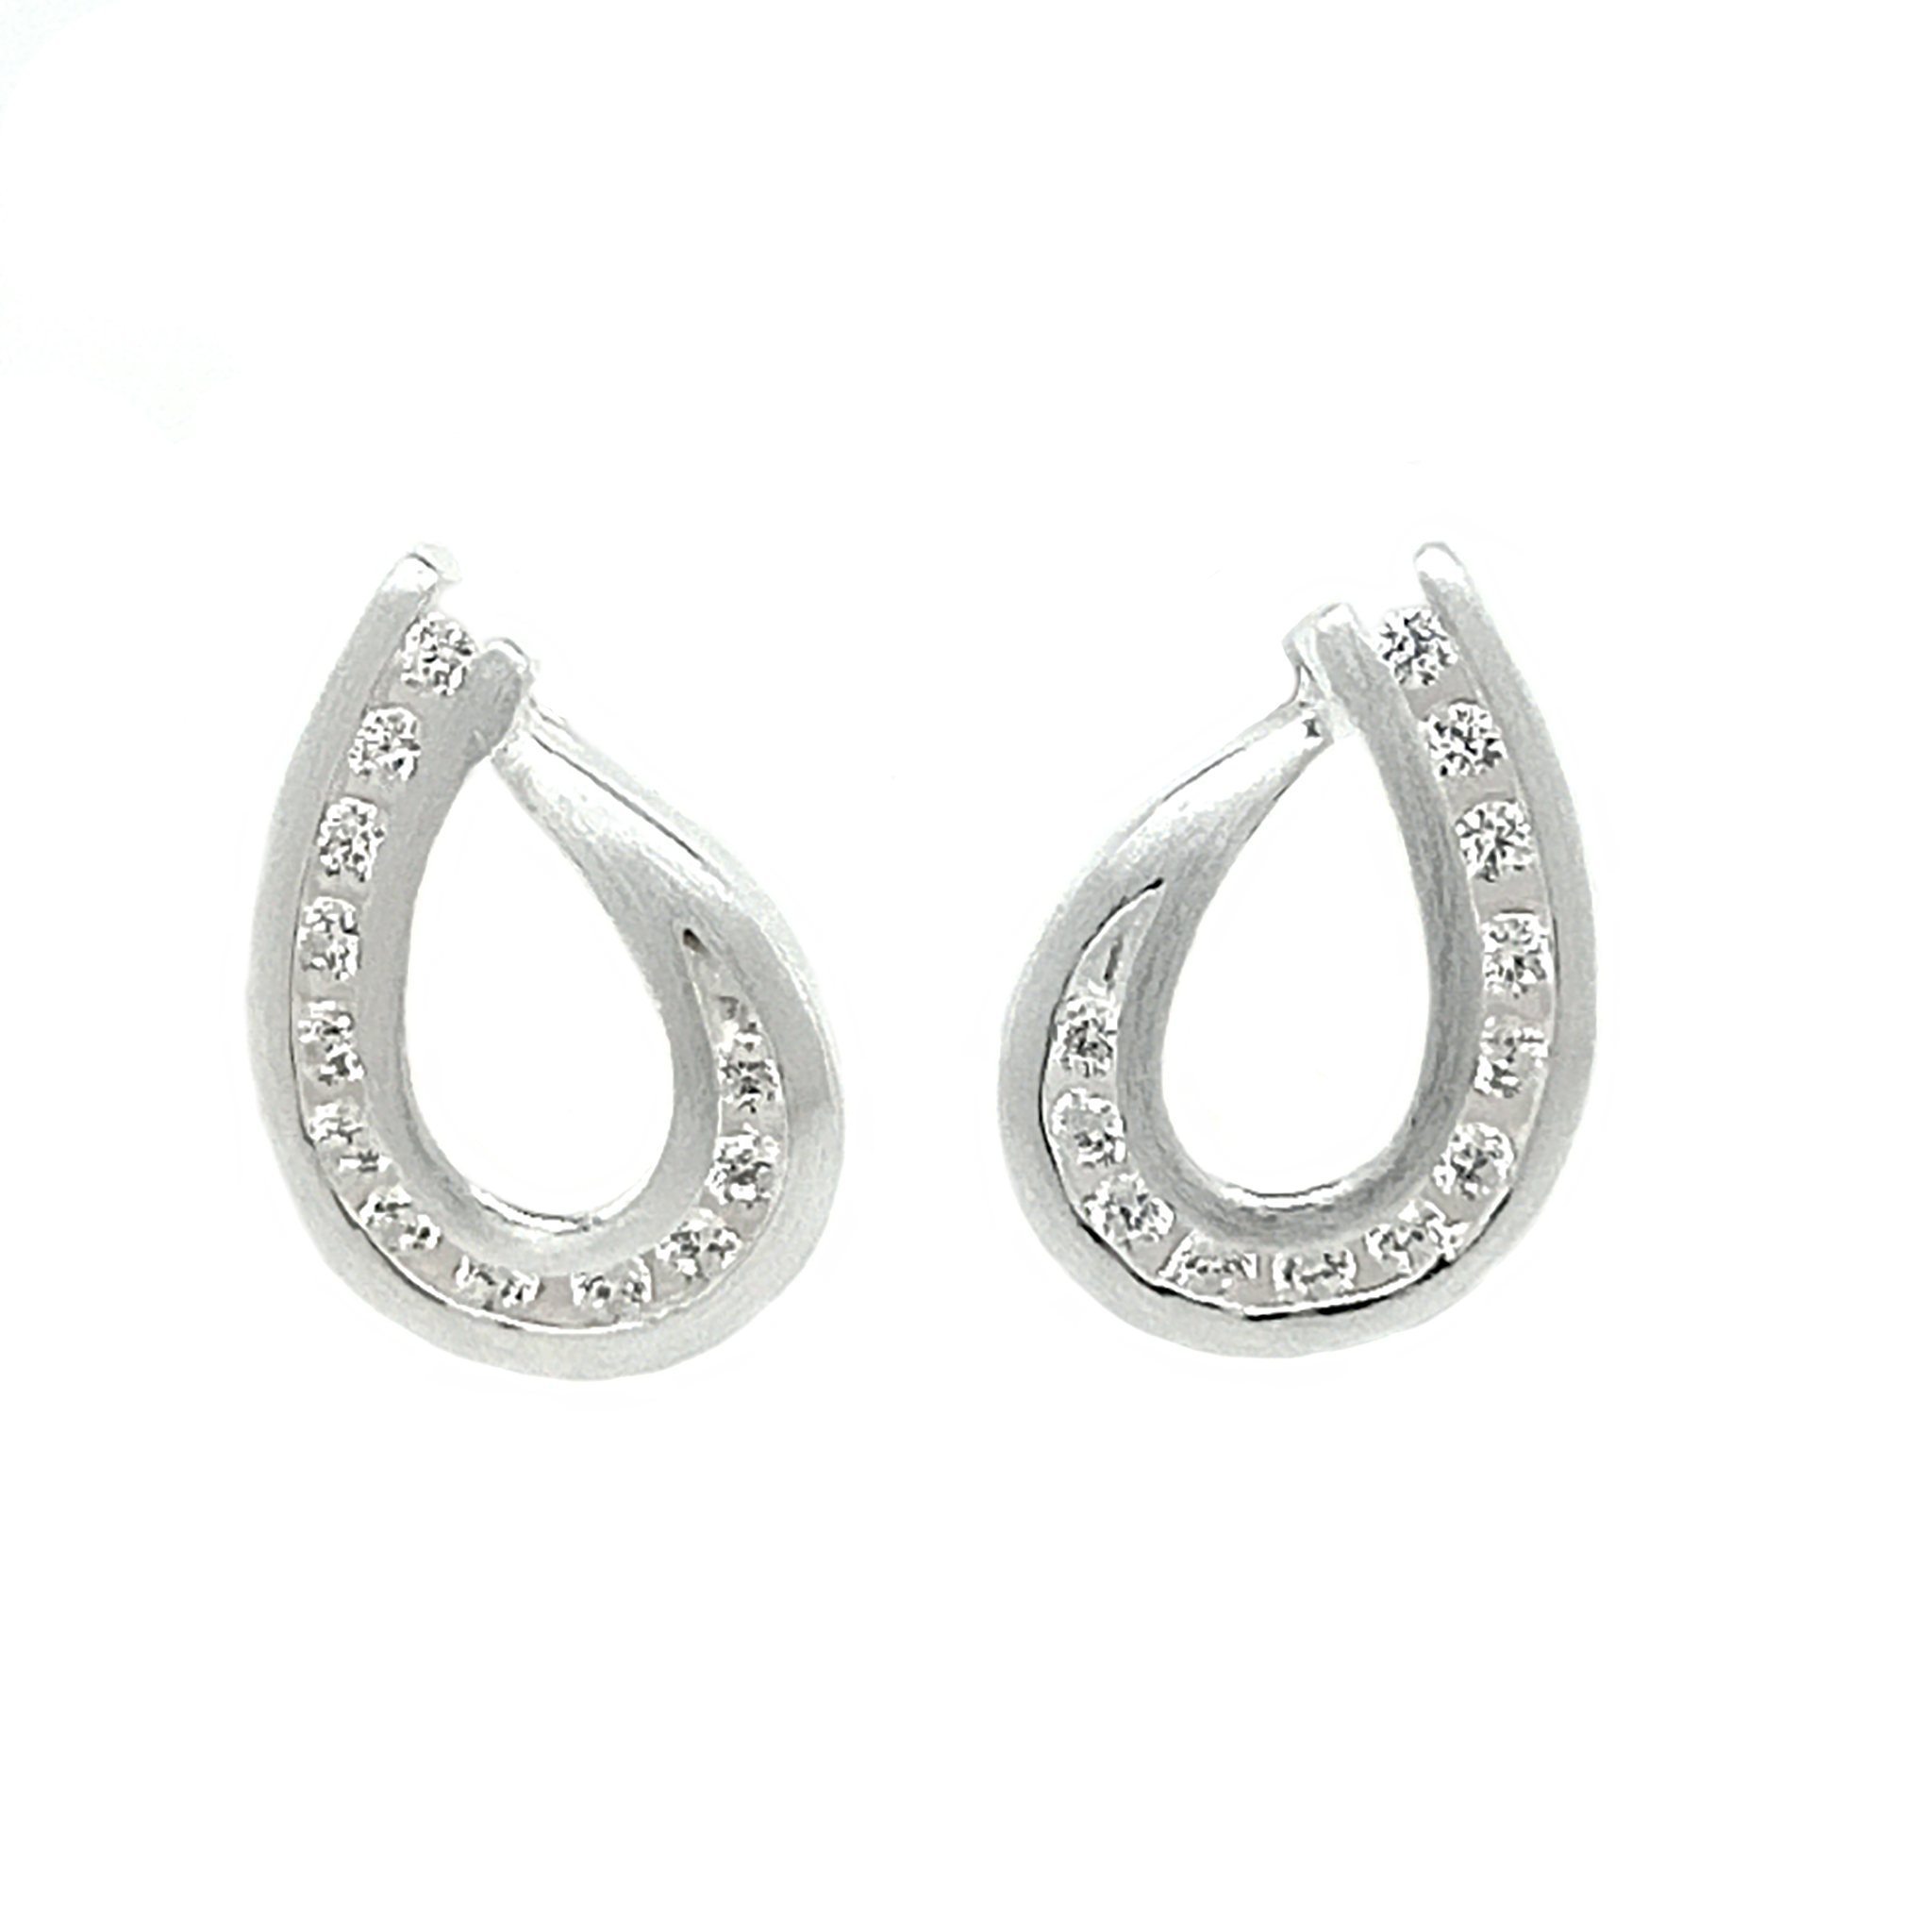 Silver Lyra Zircon Stud Earrings